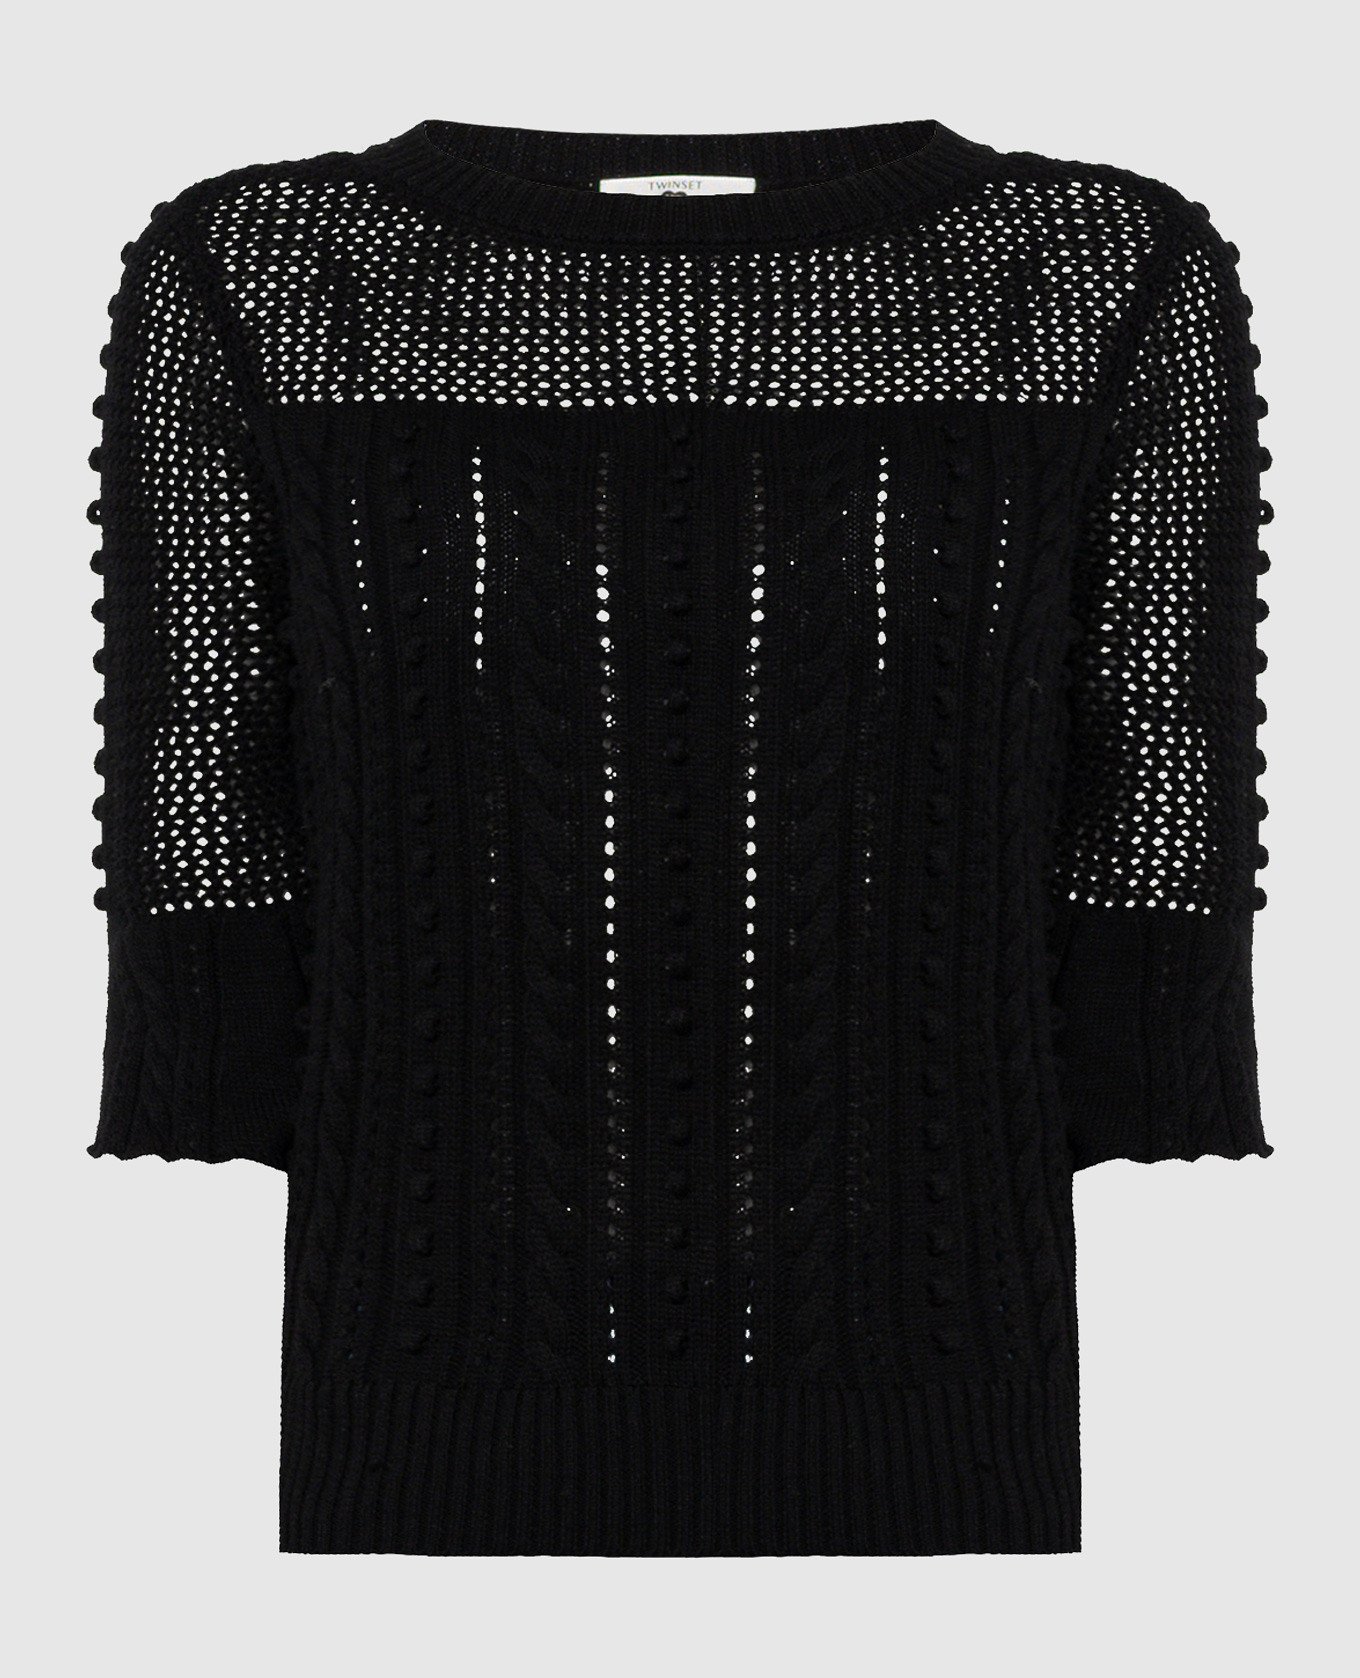 Black jumper in textured pattern